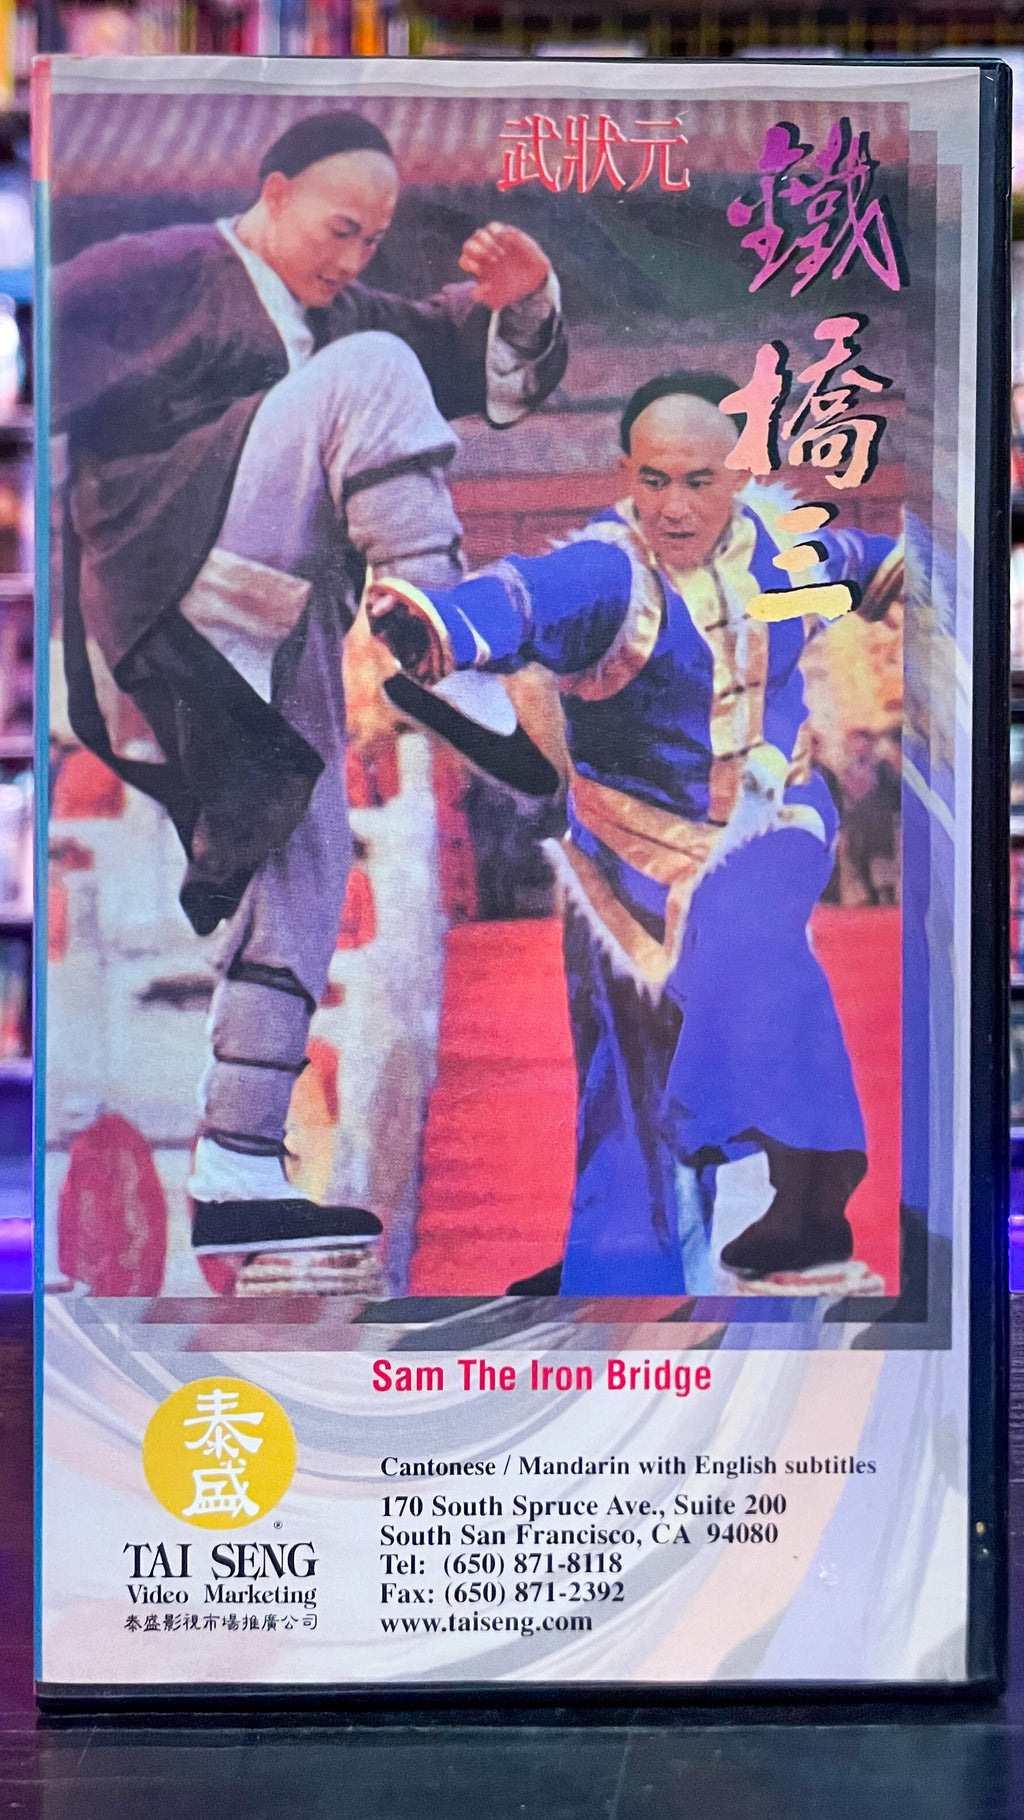 Sam The Iron Bridge